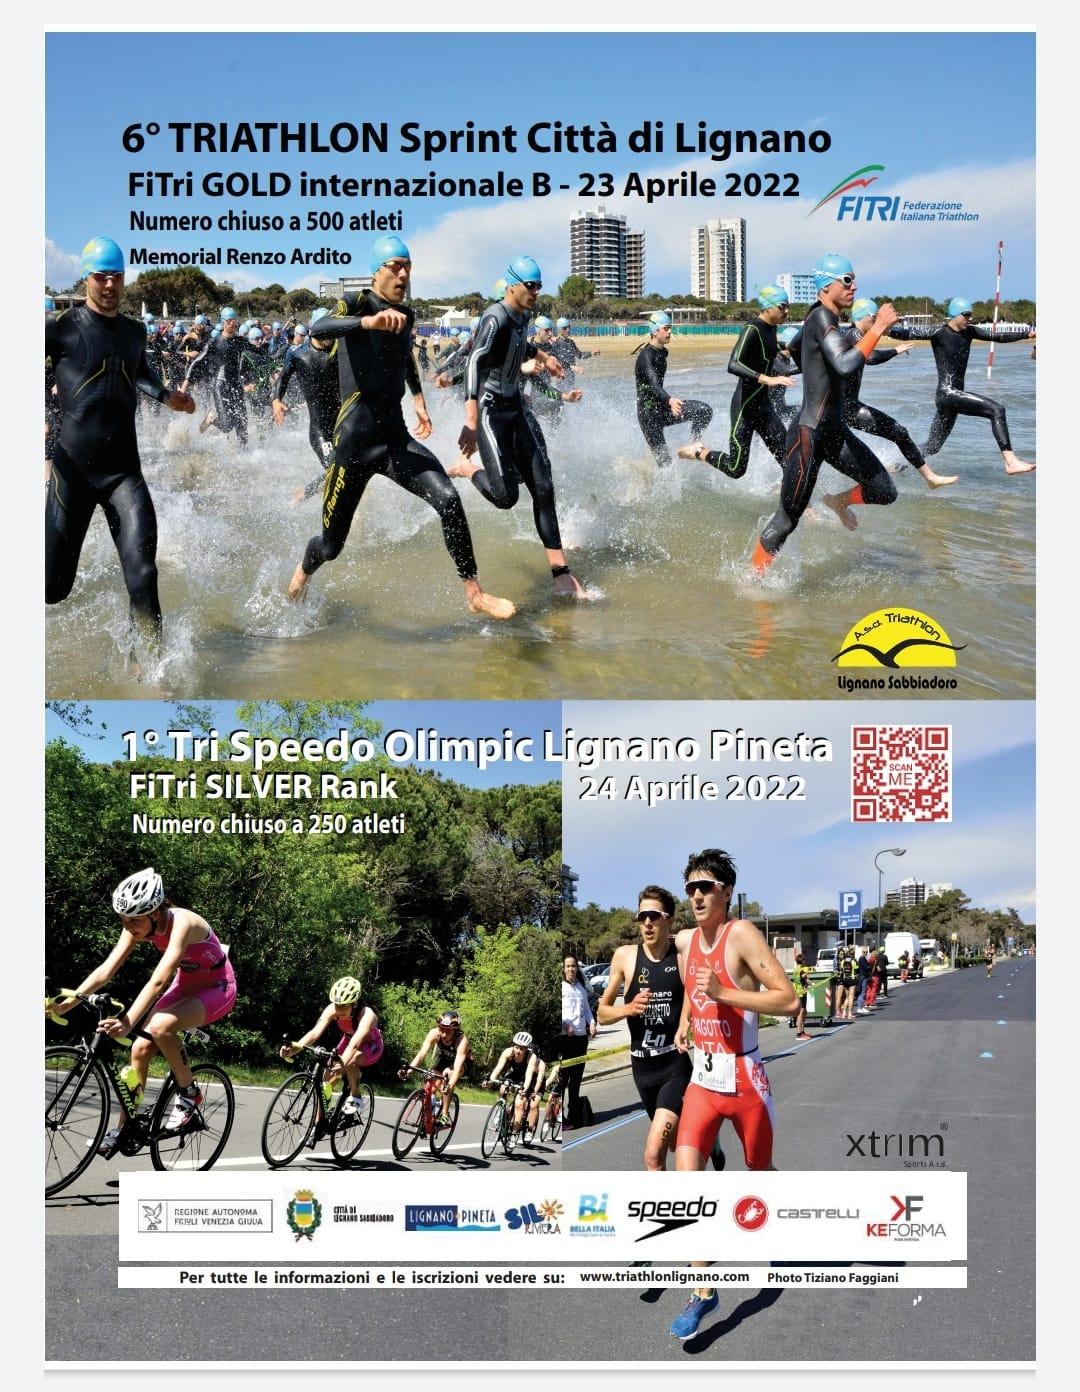 images/2022/Gare_ITALIA/Triathlon_Sprint_e_Olimpico_LIGNANO/medium/Triathlon_Weekend_Lignano_2022.jpg